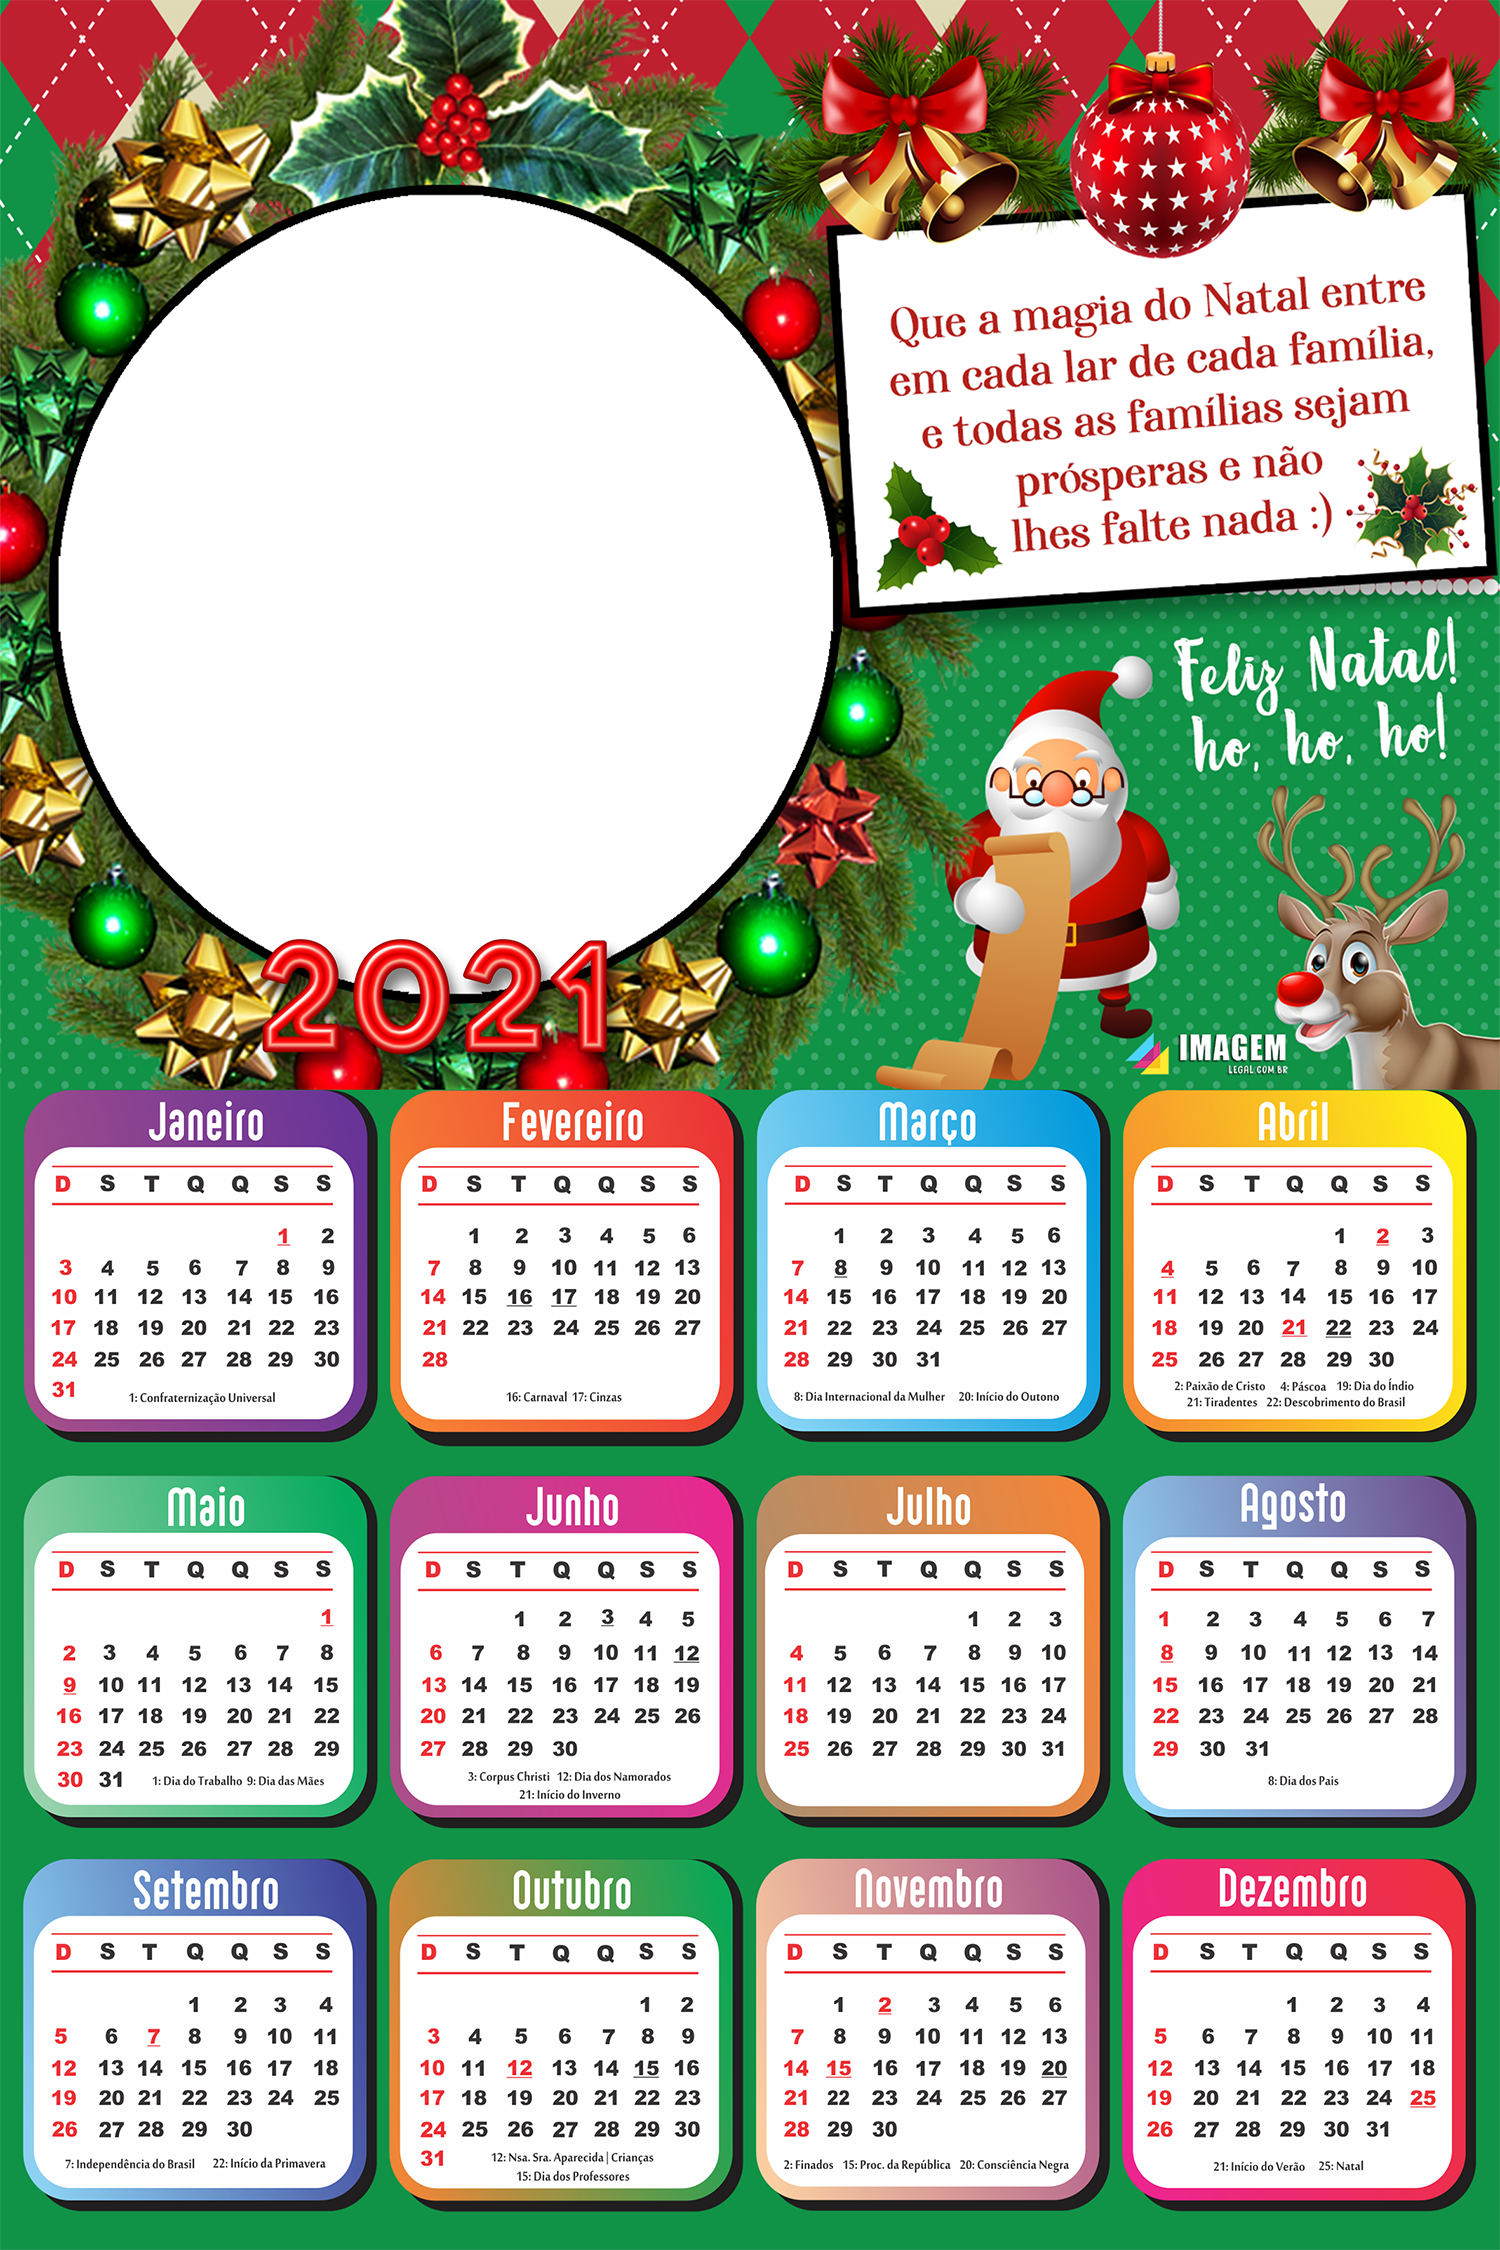 Calendário 2021 Que a magia do Natal entre em cada lar